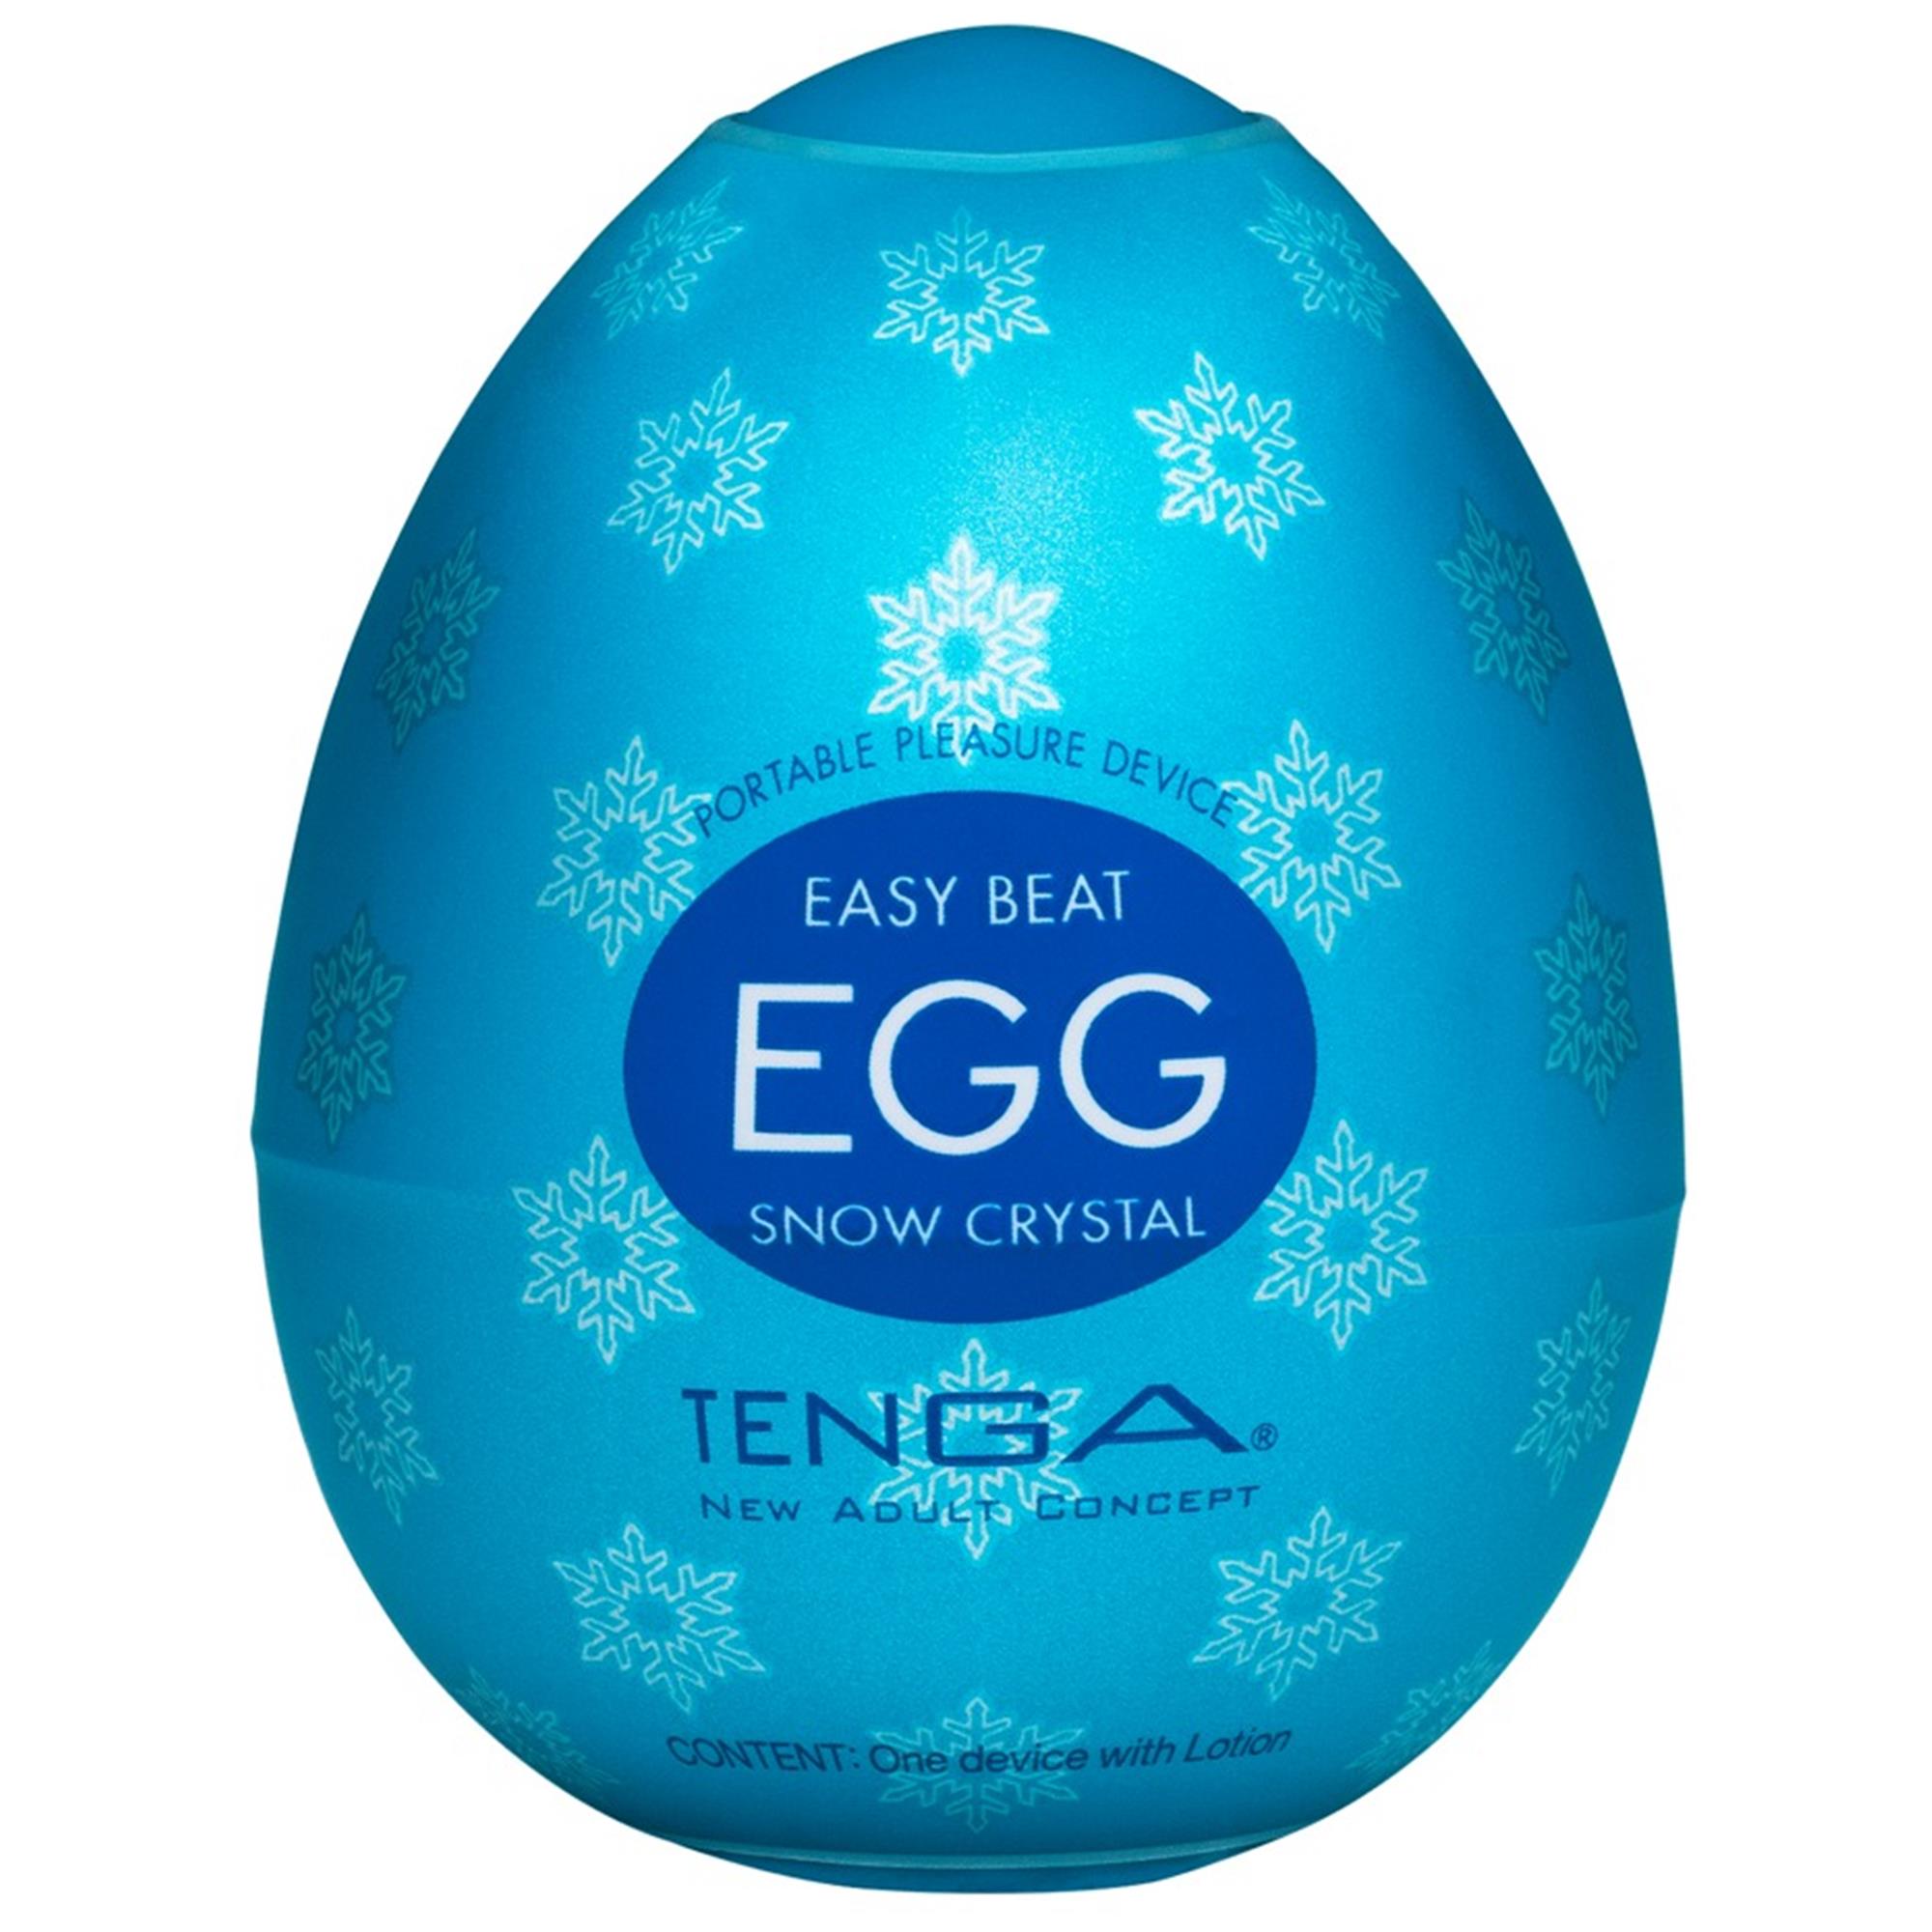 Tenga Egg Snow Crystal thumbnail